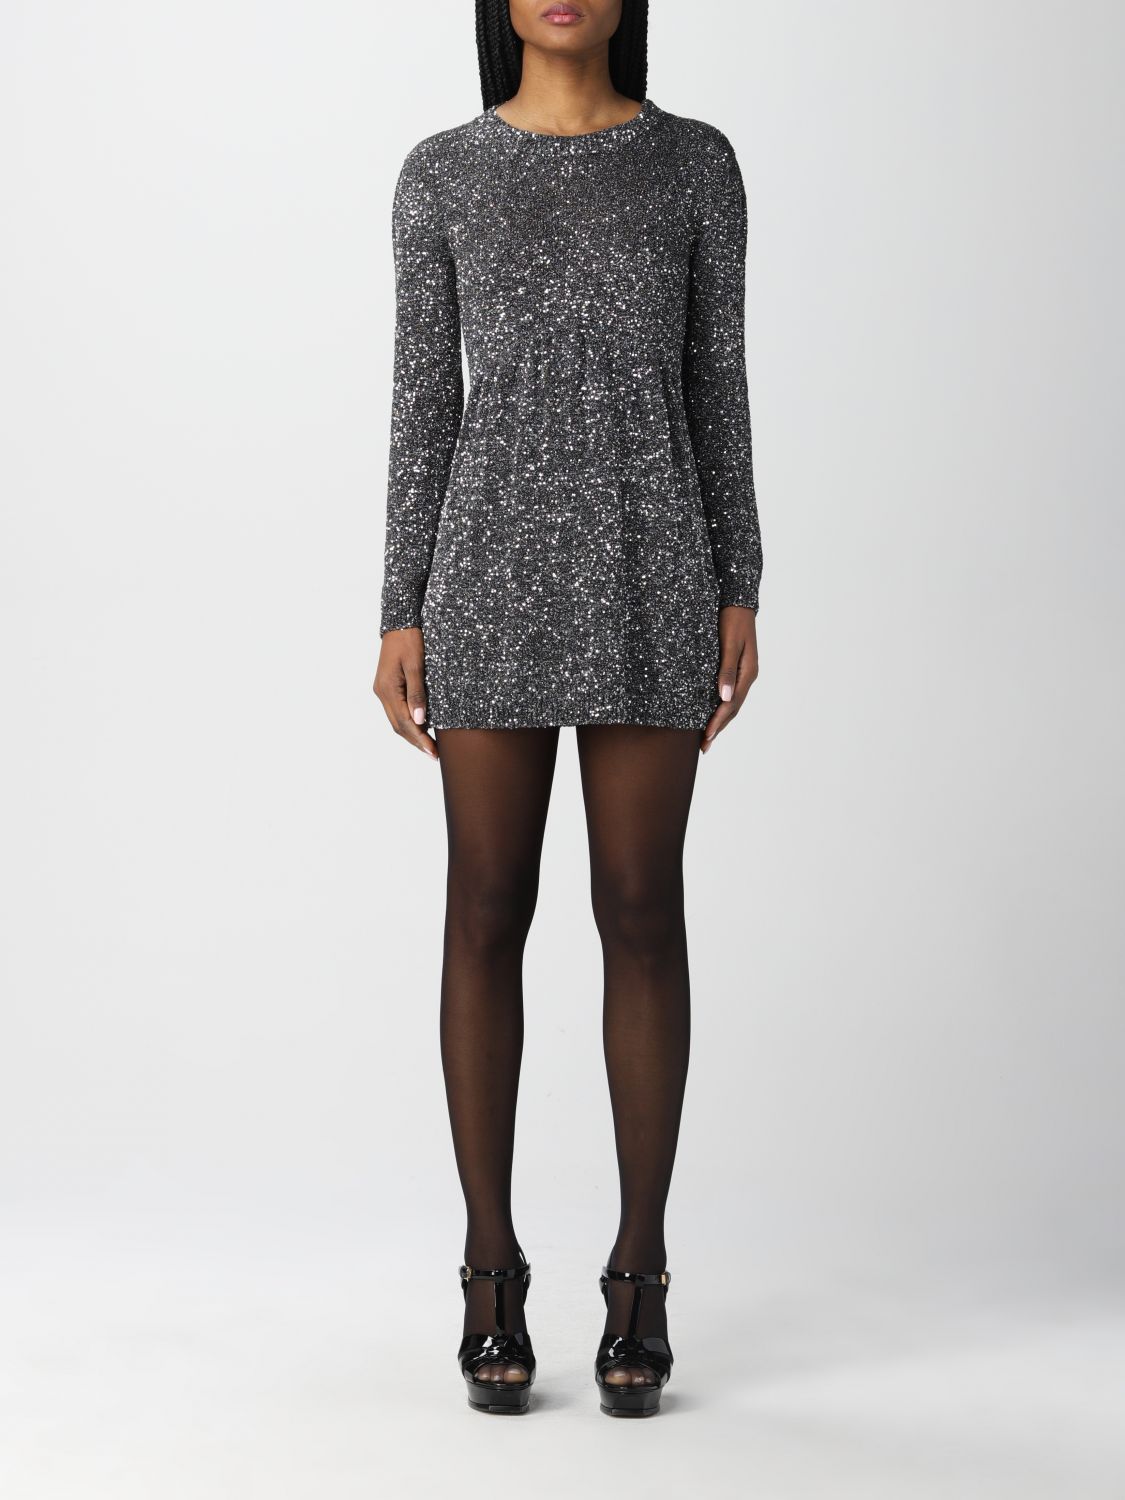 SAINT LAURENT: short dress with sequins - Black | Saint Laurent dress